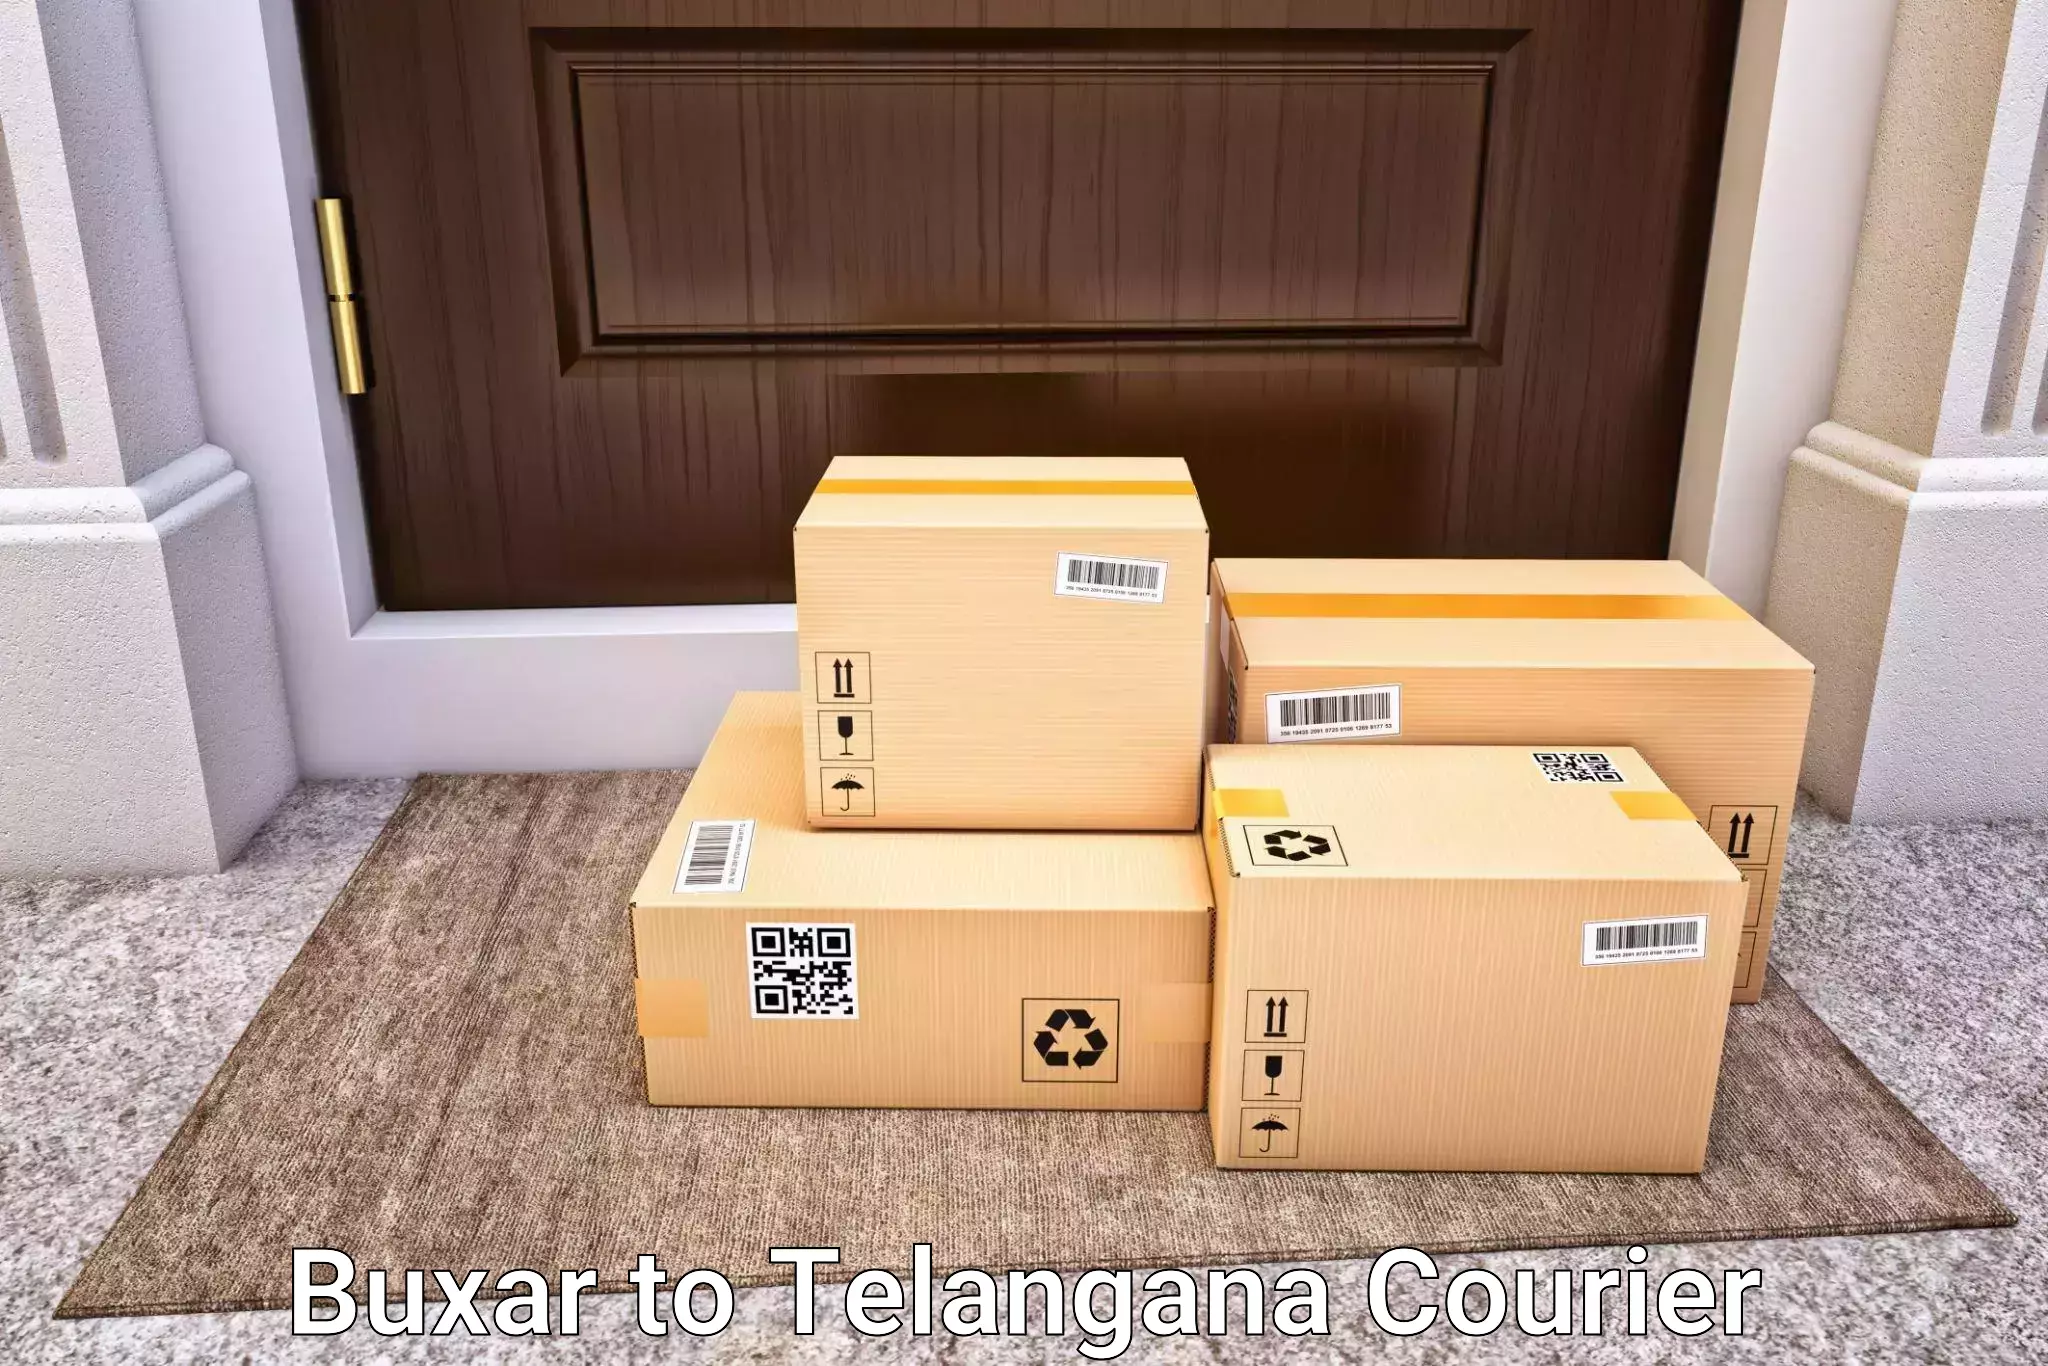 Automated luggage transport Buxar to Manthani